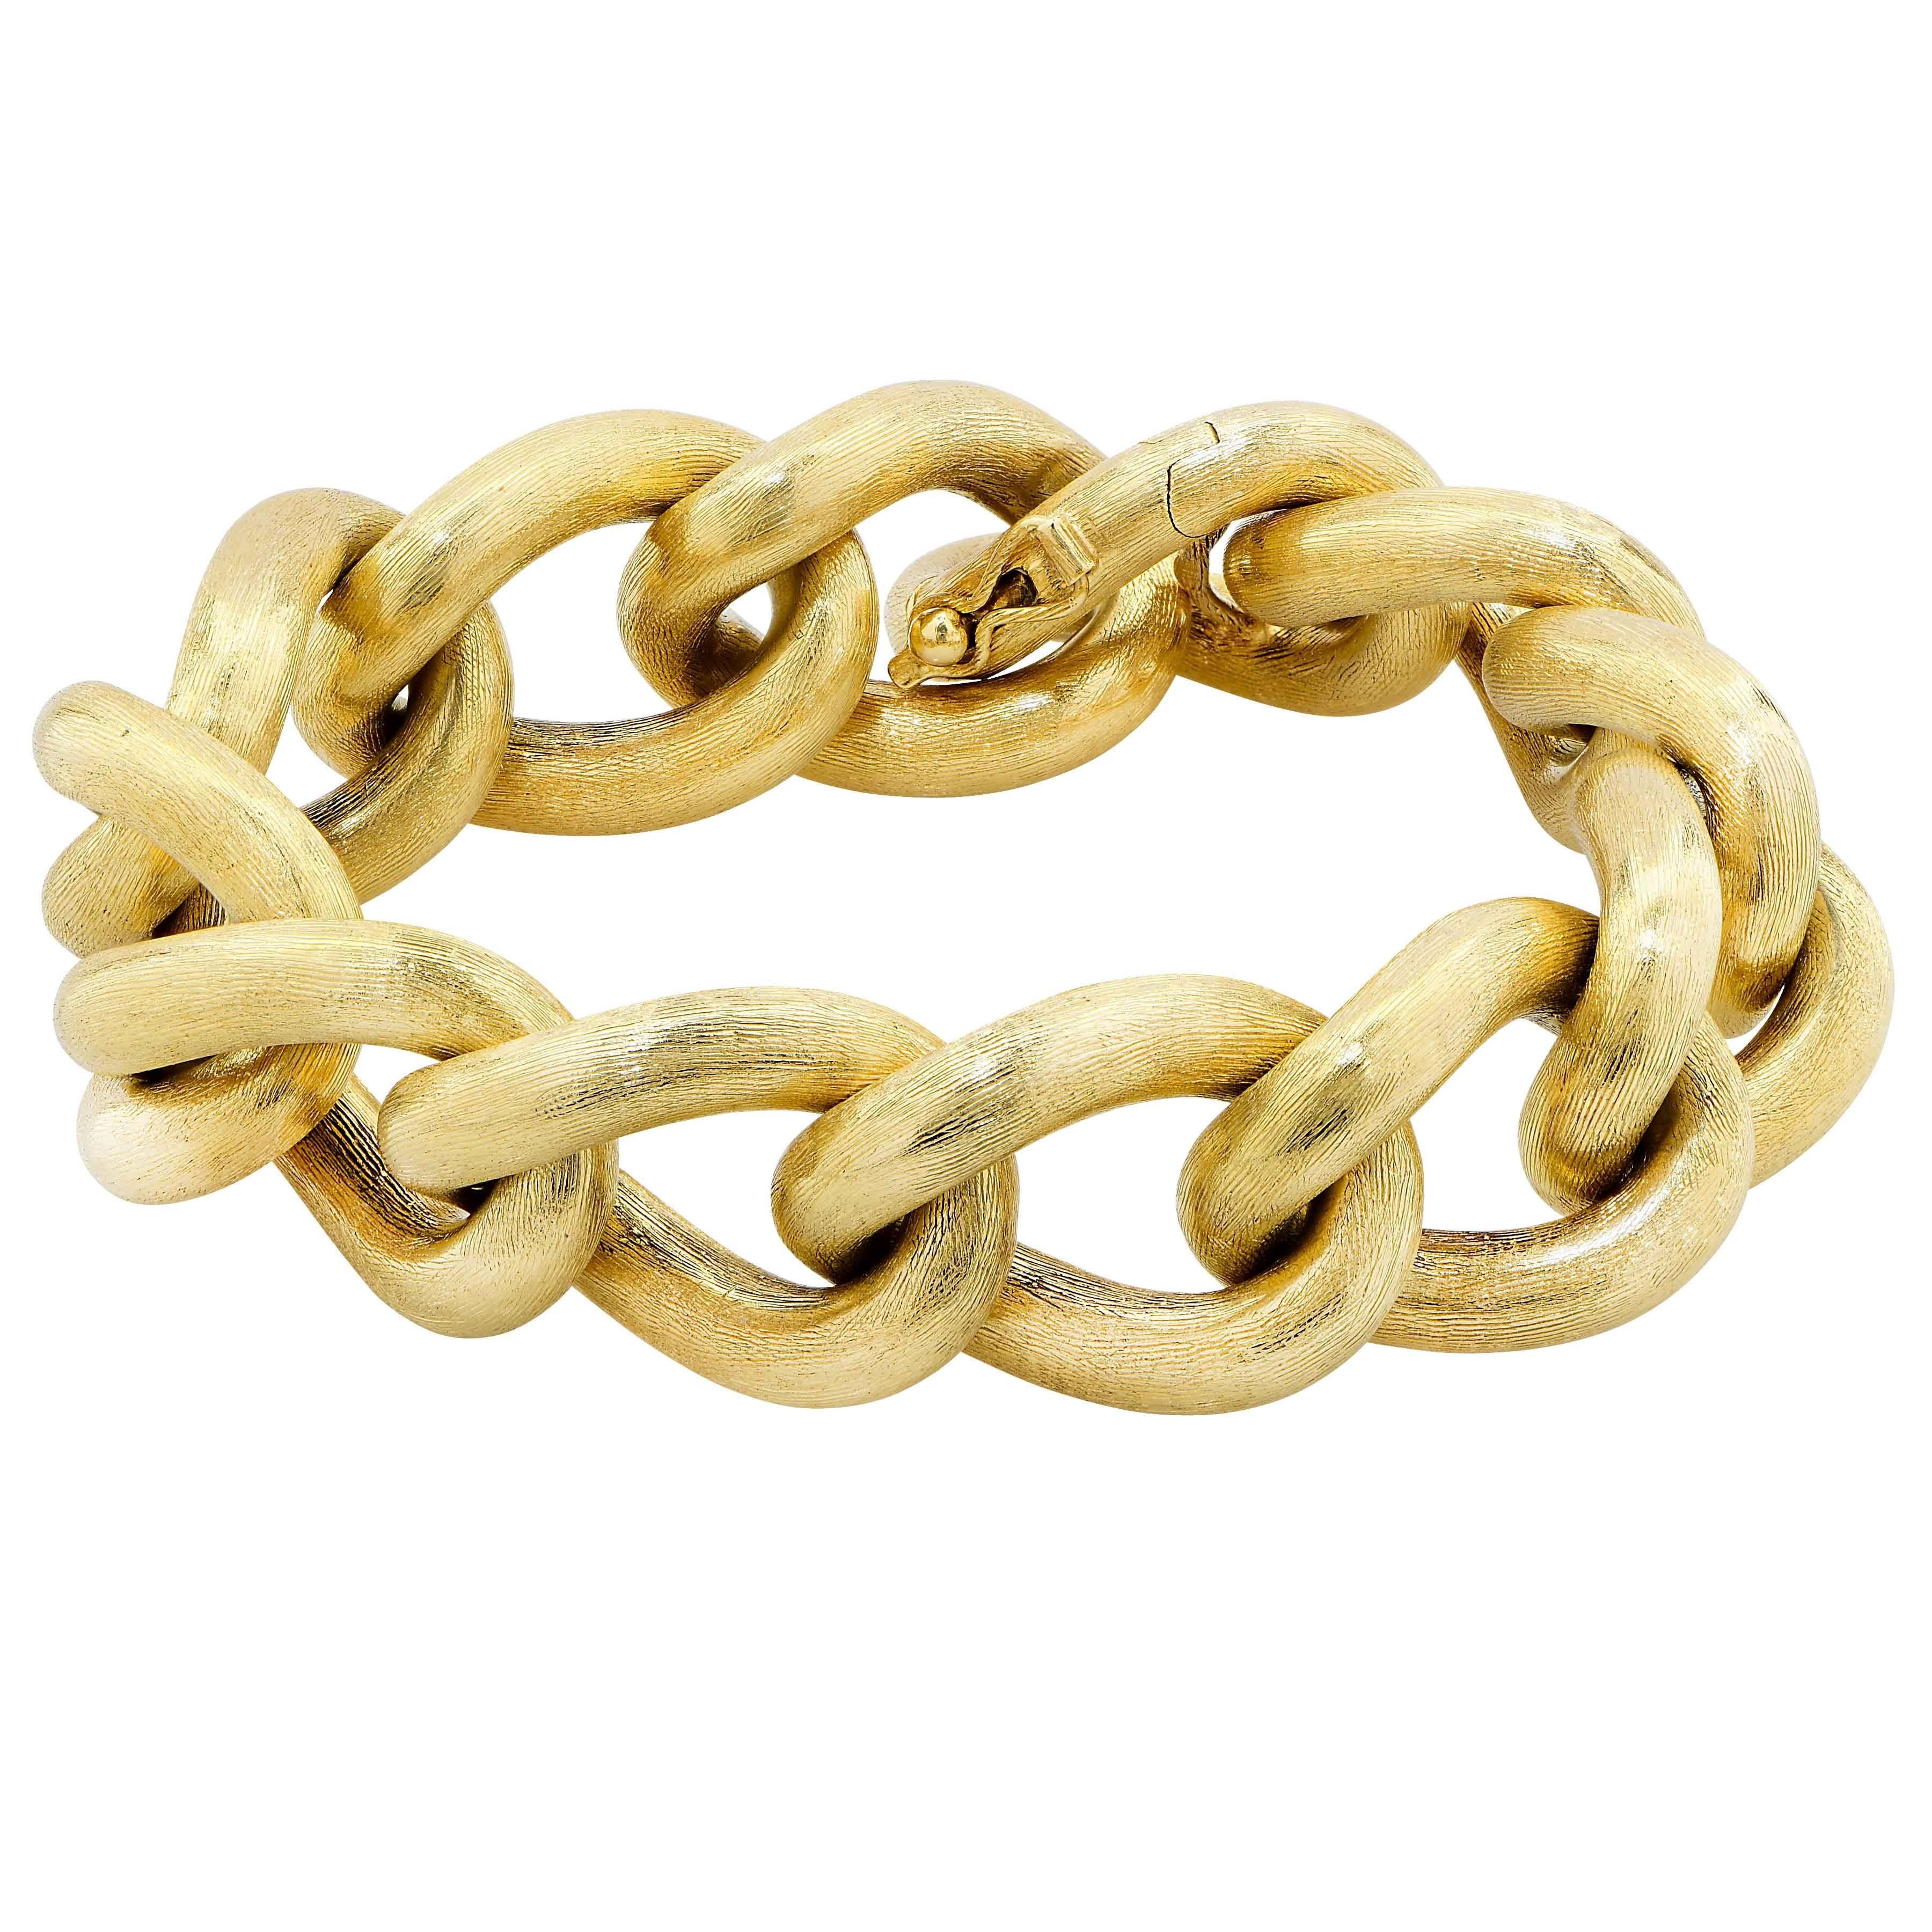 18 Karat Yellow Gold Etched Large Link Bracelet 
Bracelet length: 8 inches
Metal Type: 18 Karat Yellow Gold
Metal Weight: 51.9 Grams